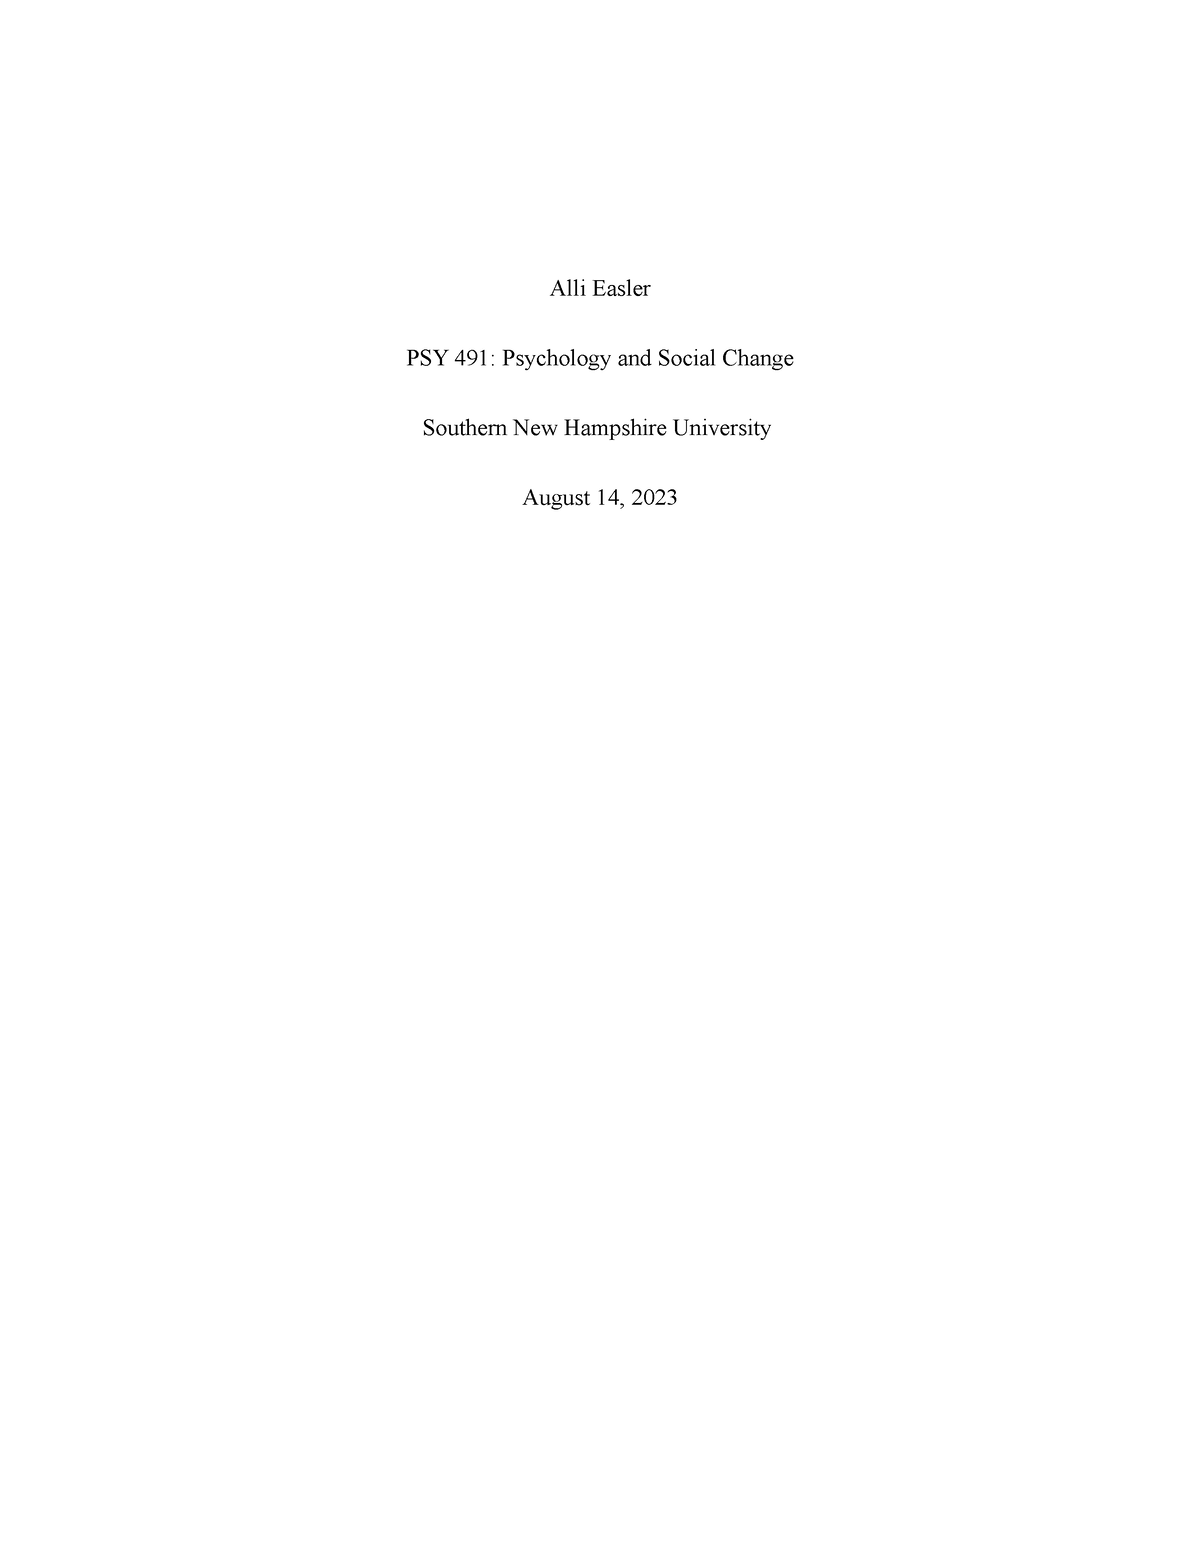 PSY 491 Module Seven Journal - Alli Easler PSY 491: Psychology and ...